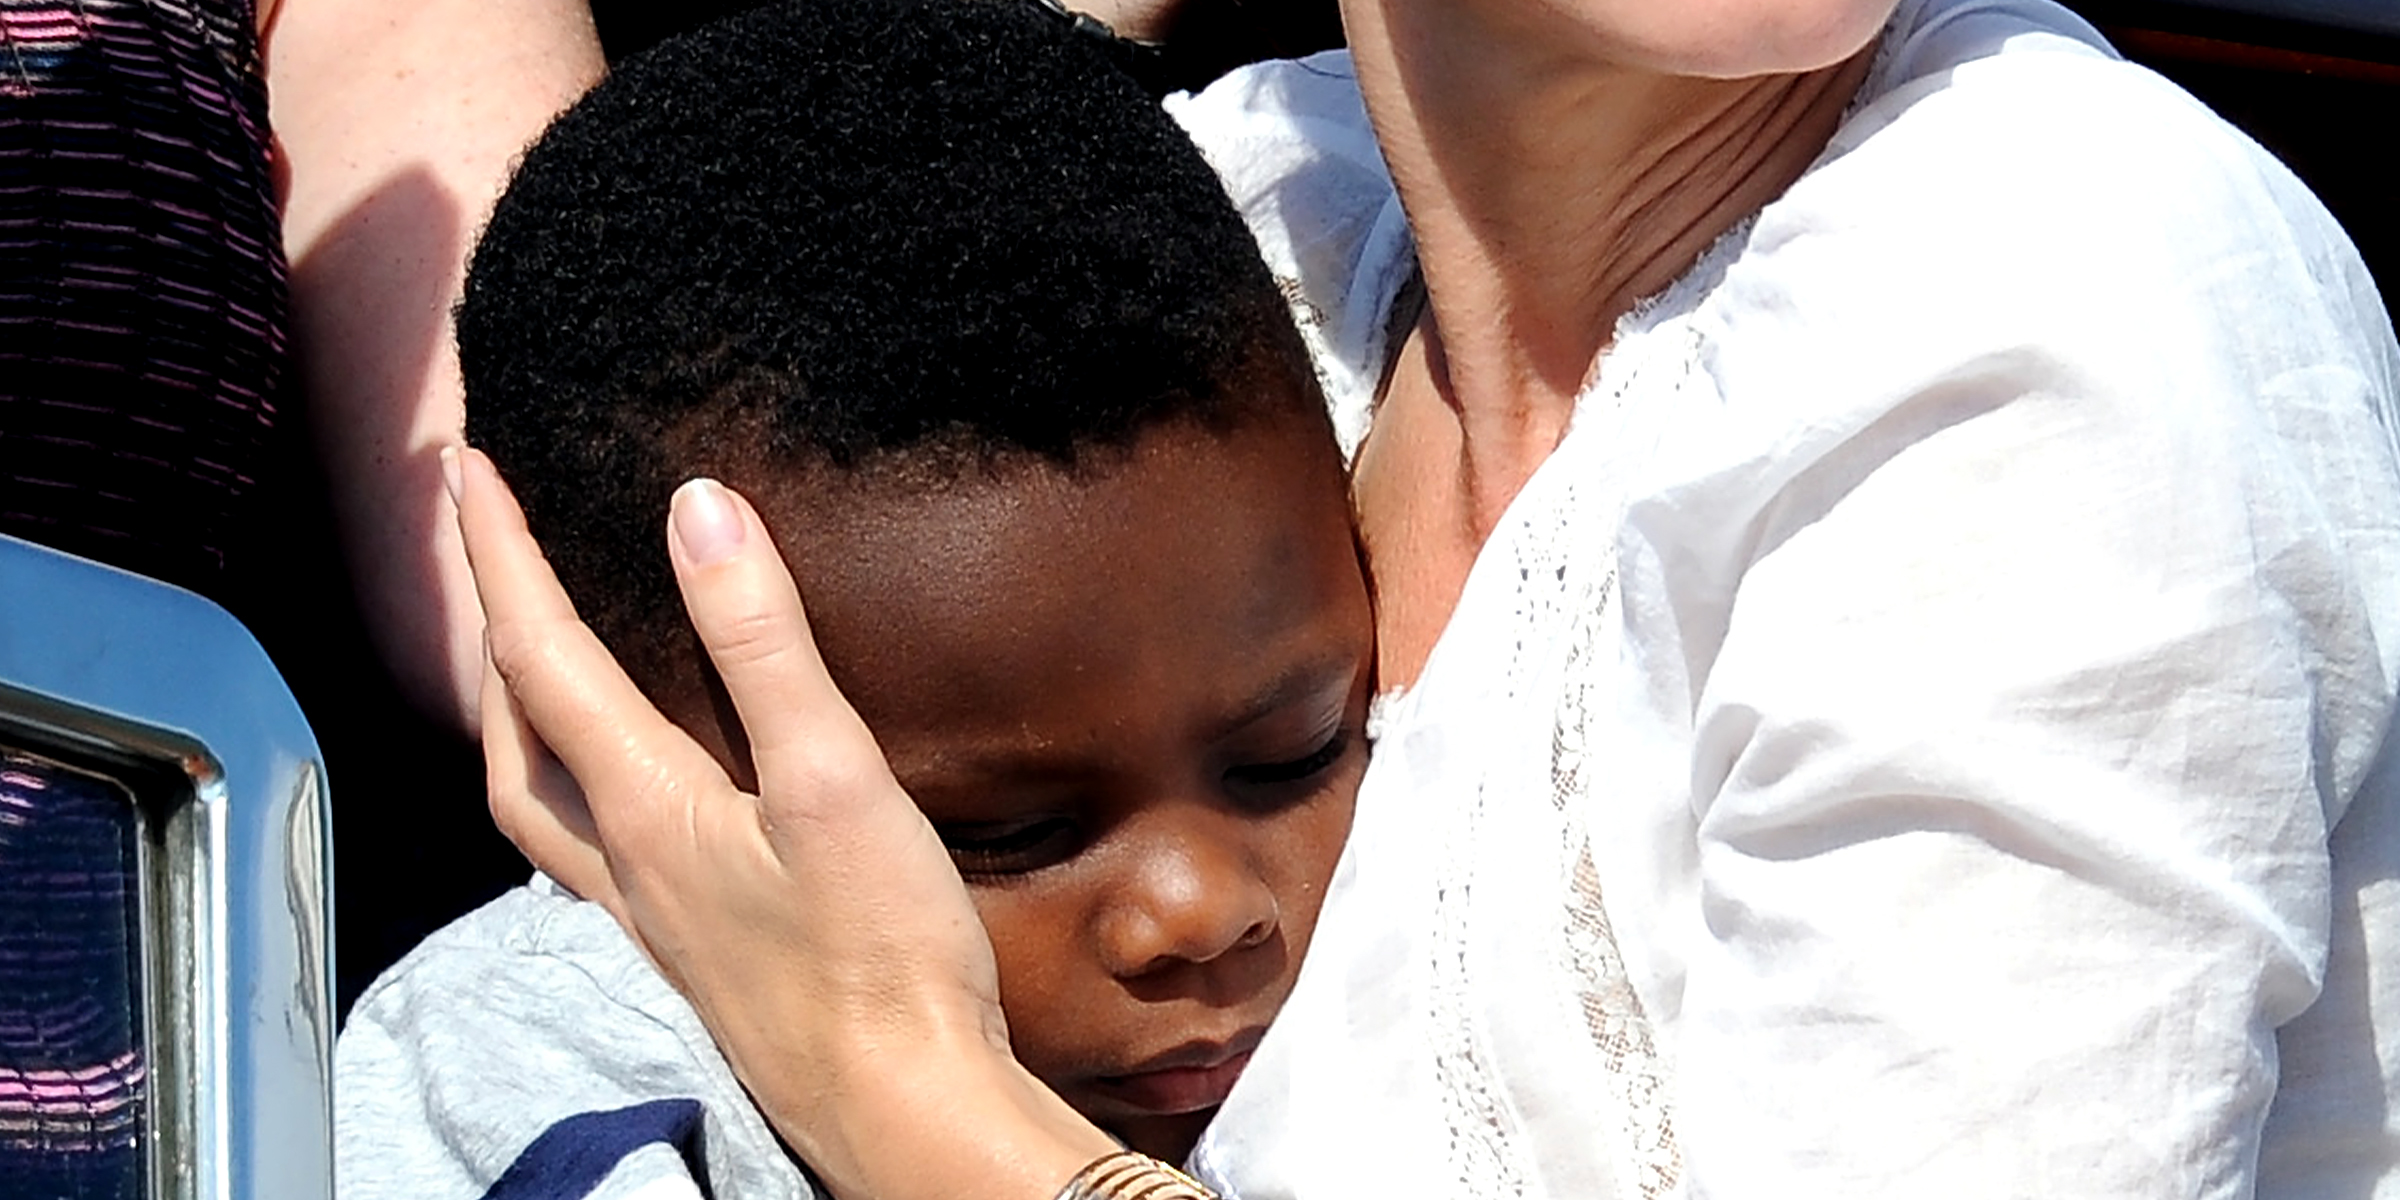 Ein kleiner Junge wird von seiner berühmten Adoptivmutter umarmt | Quelle: Getty Images